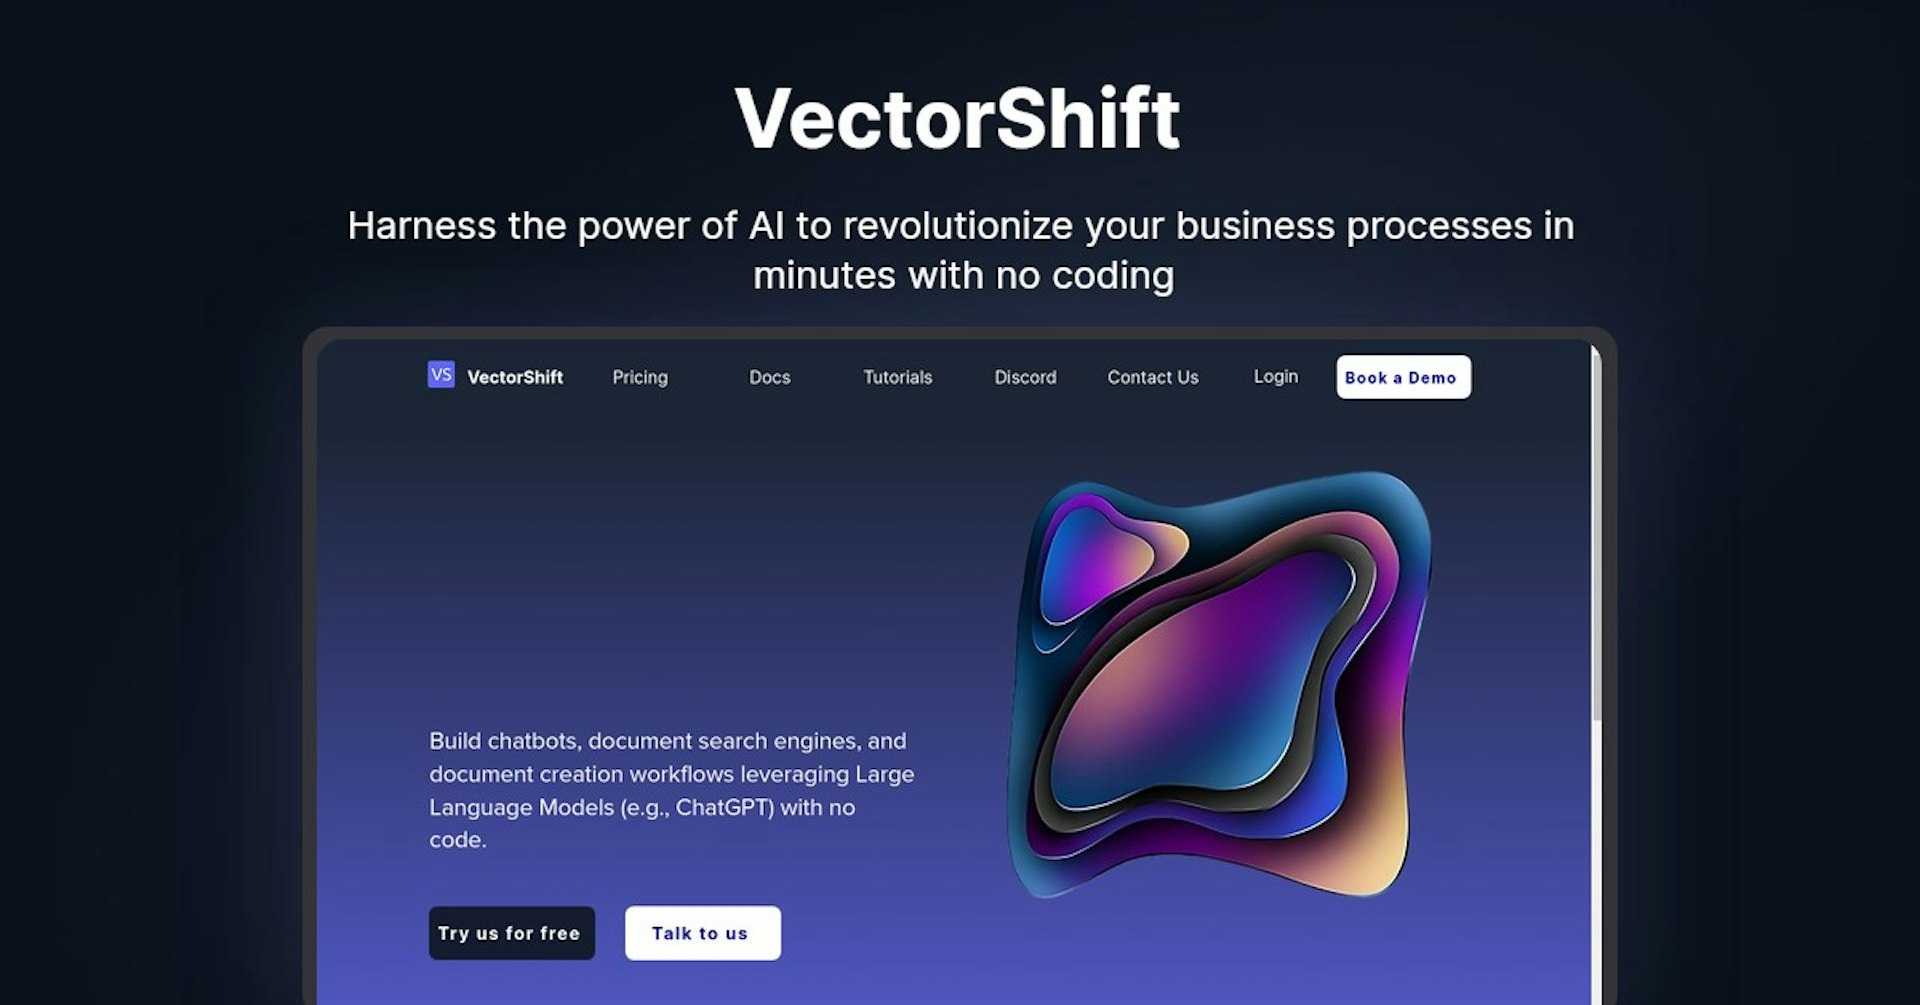 VectorShift